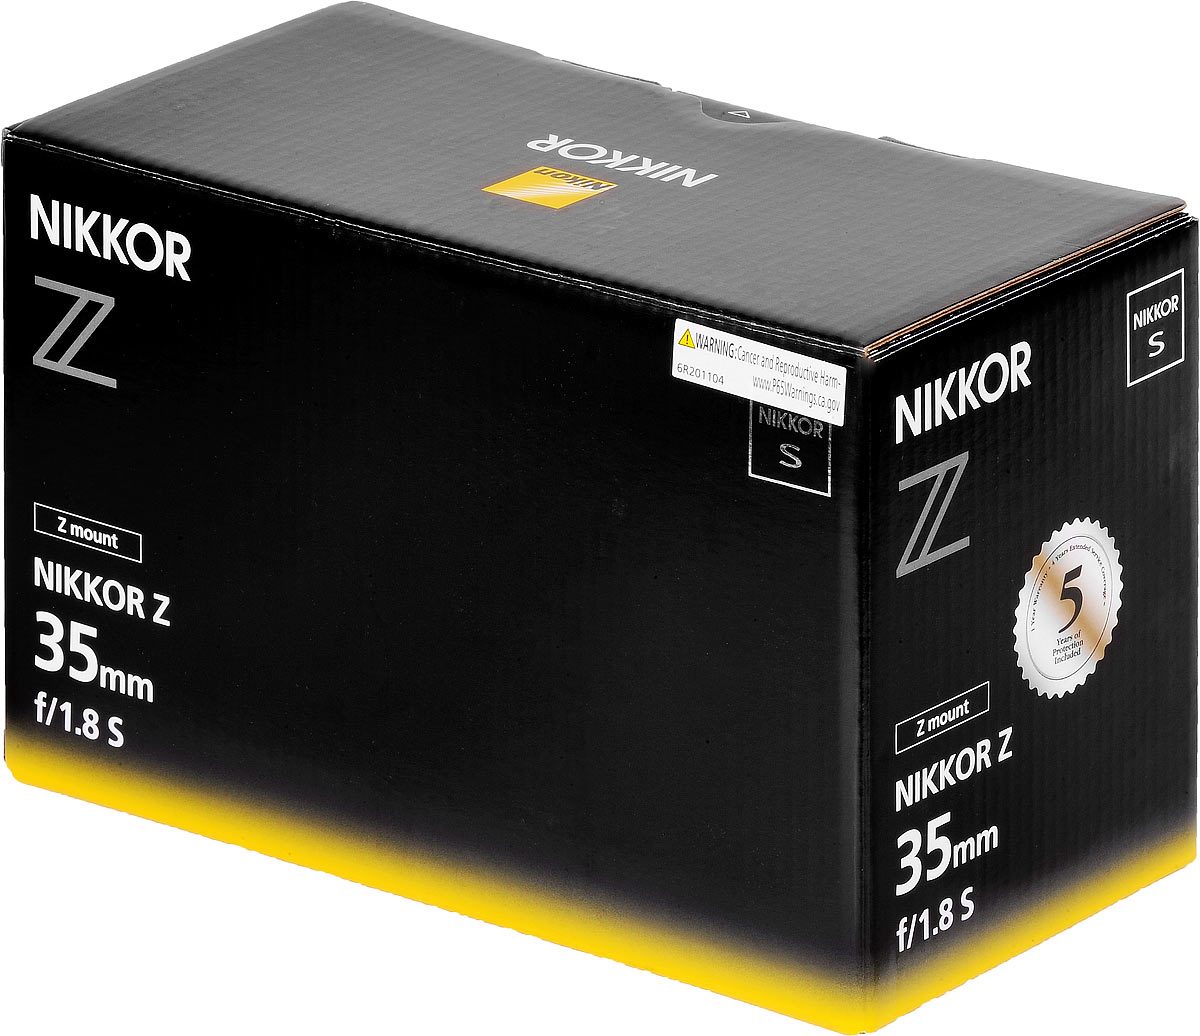 Nikon Z 35mm F 1 8 Review